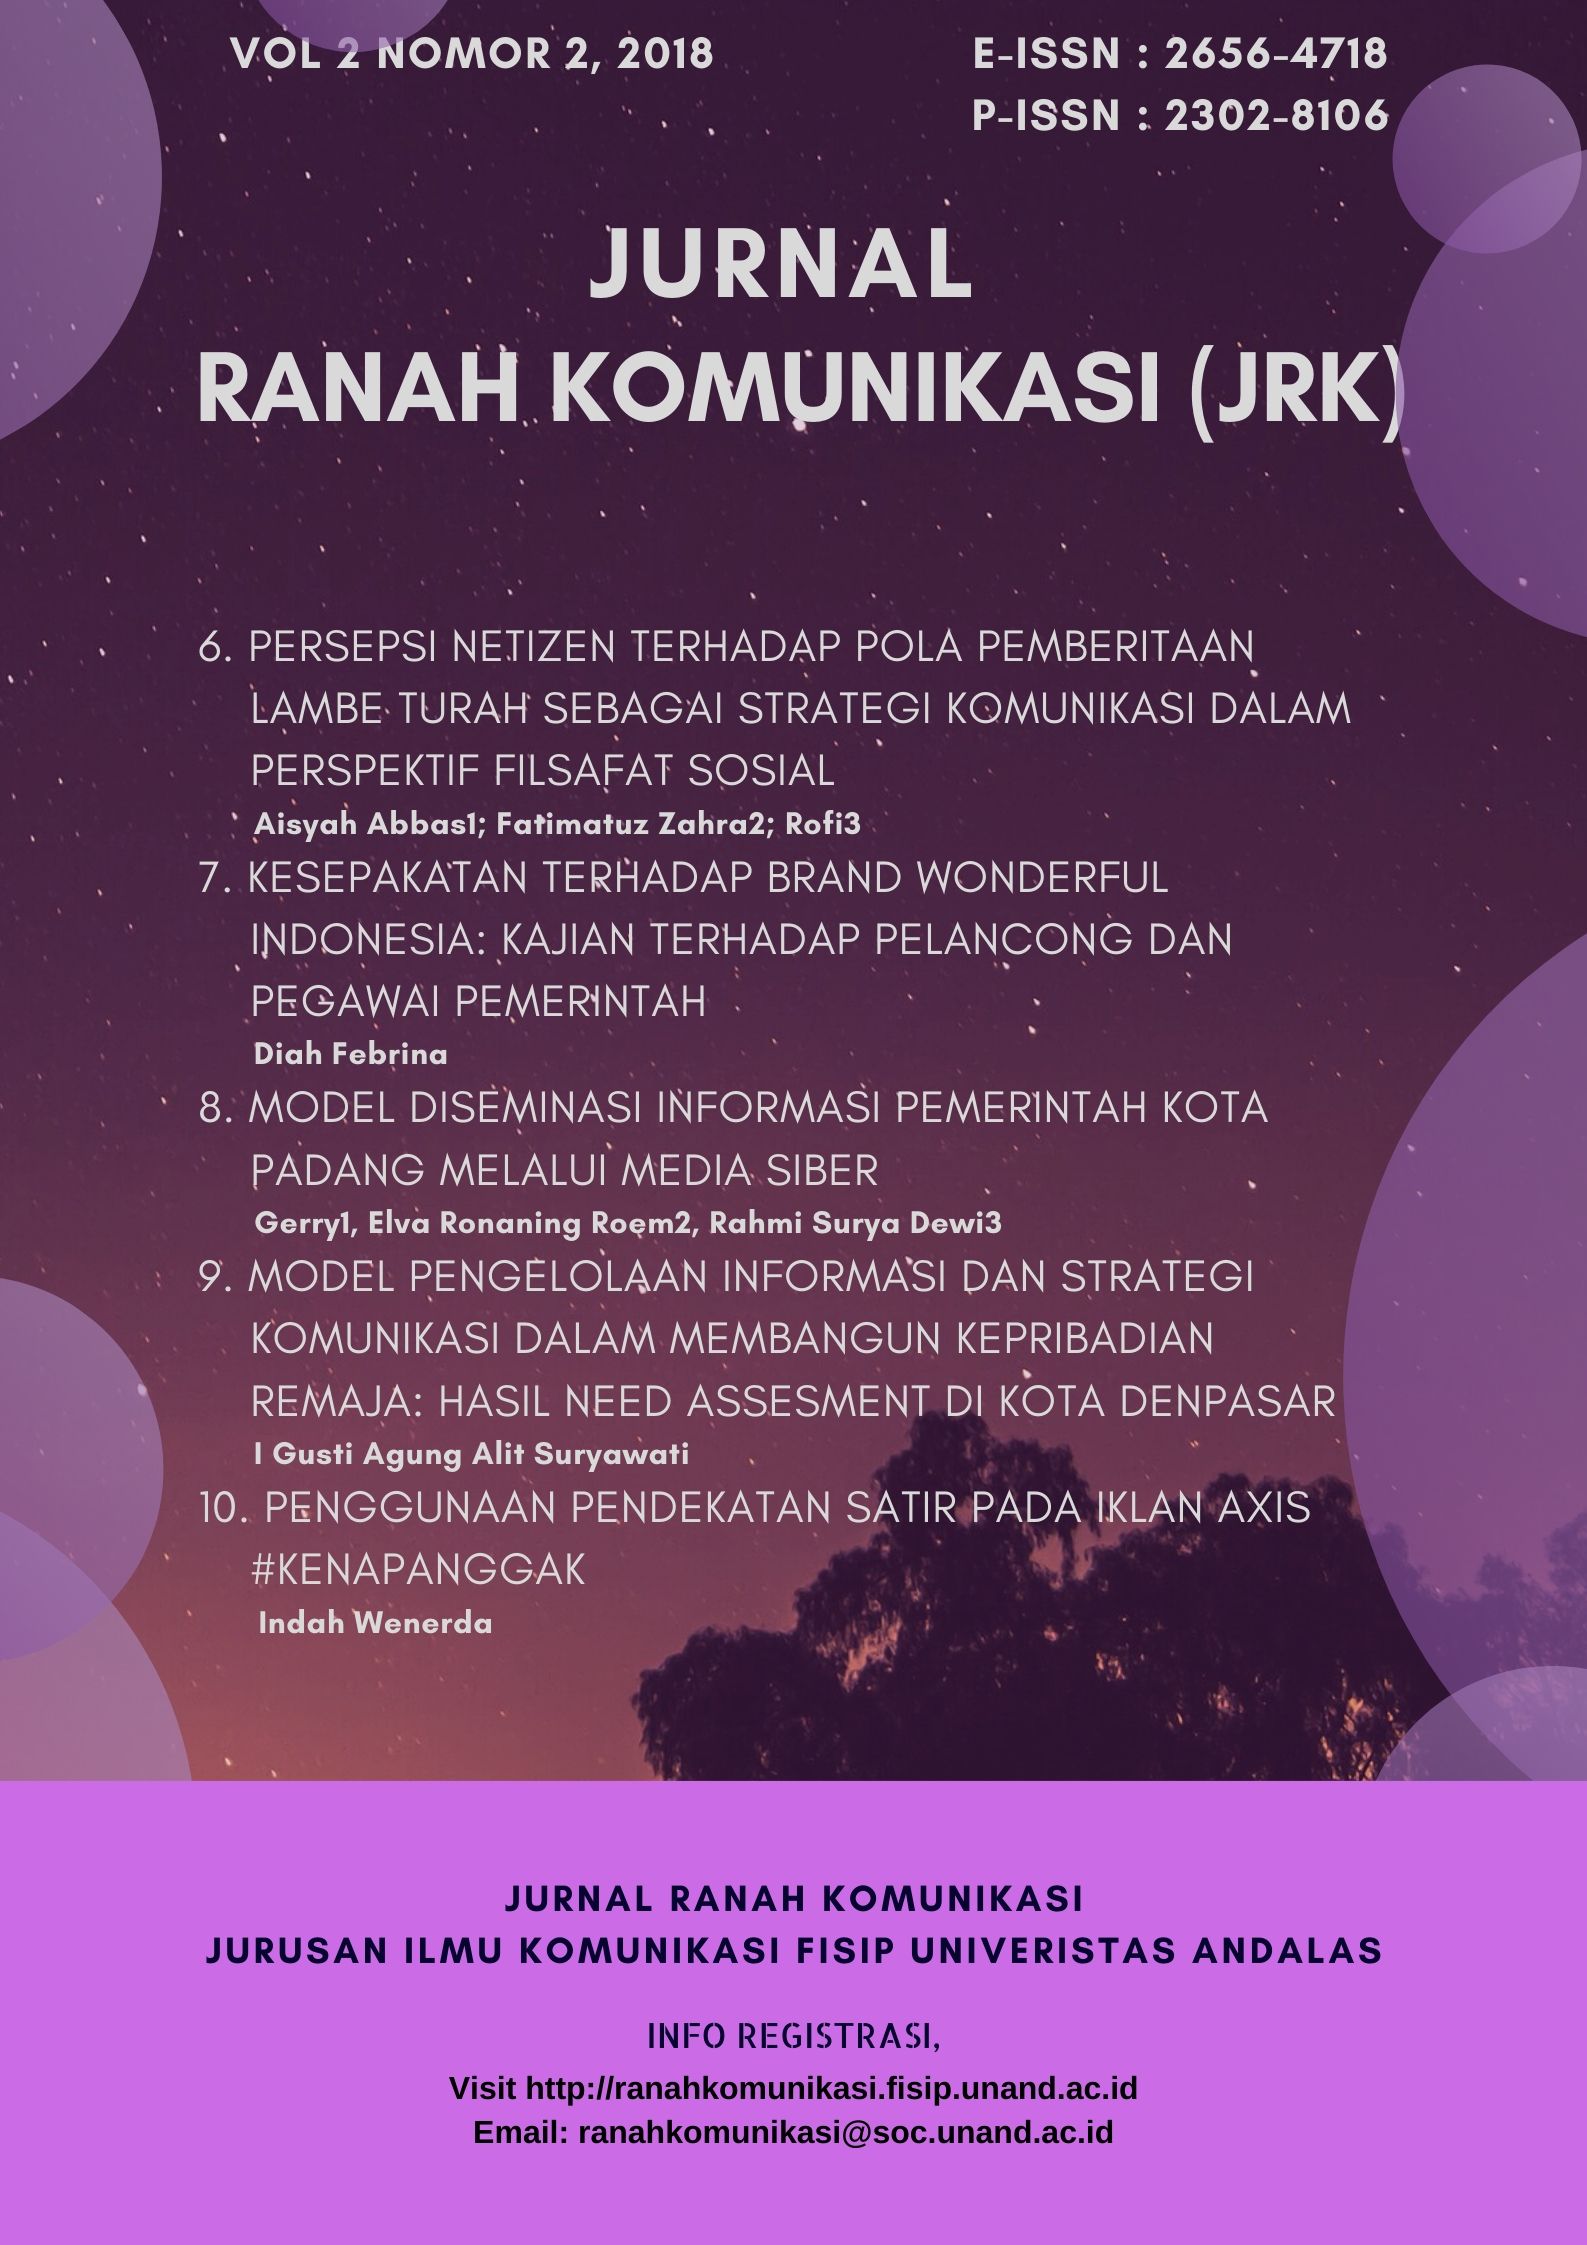 Archives Jurnal Ranah Komunikasi (JRK)